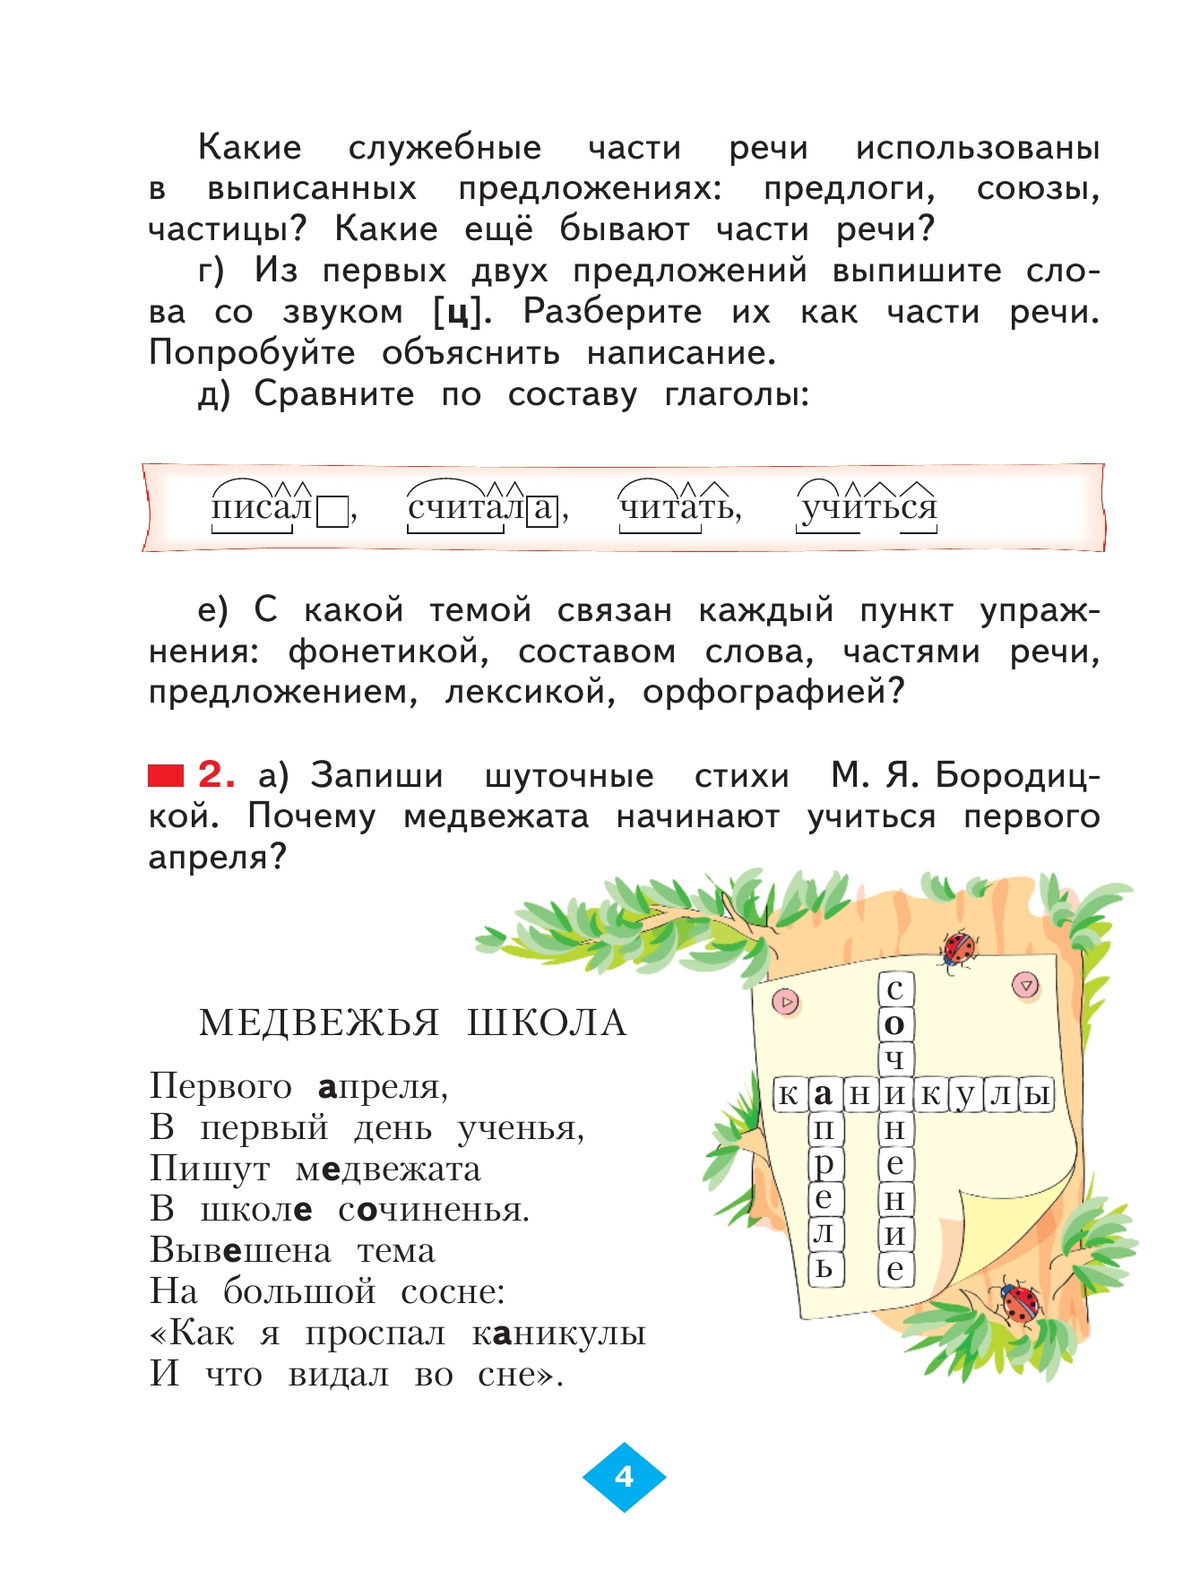 Русский язык. 4 класс. Учебник. В 2 ч. Часть 1 6